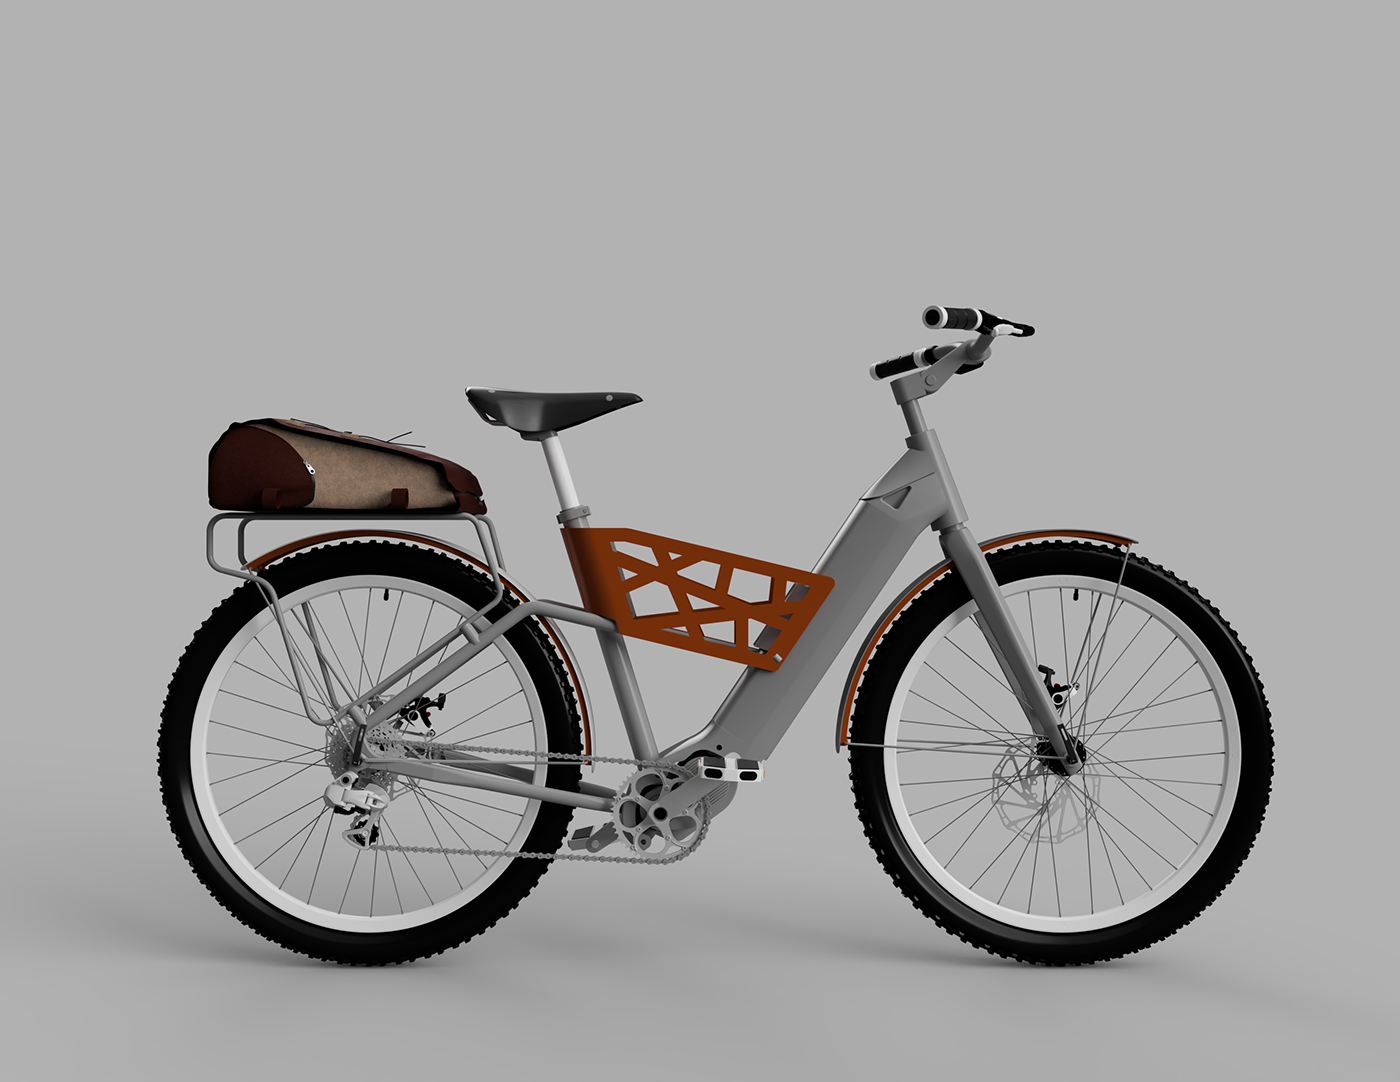 Aldeias do Xisto ADXTUR Alforge bicicleta saddle bag Bike